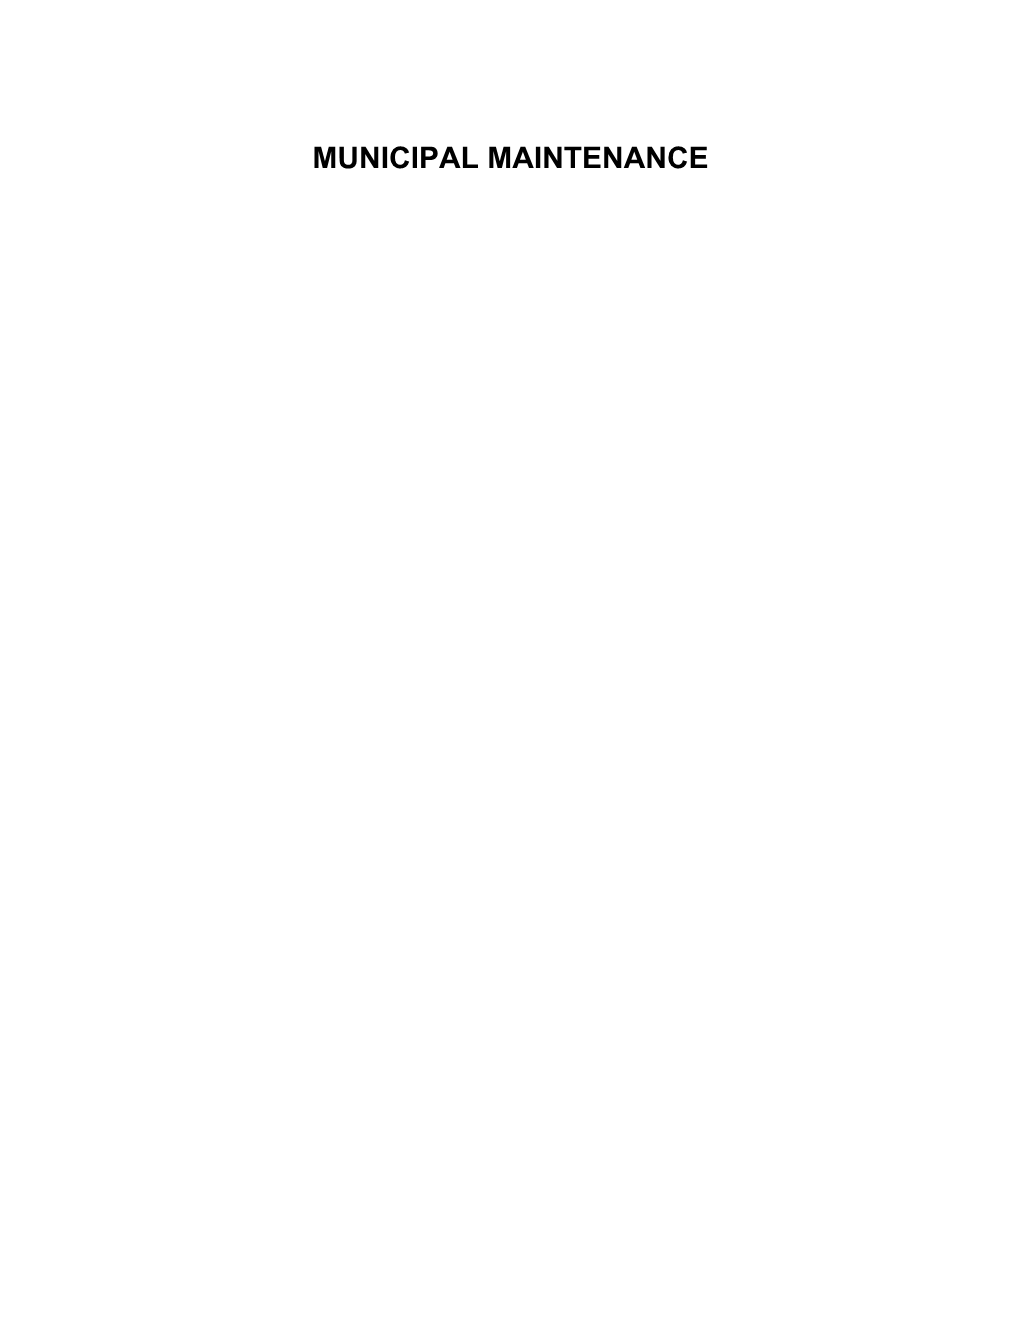 Municipal Maintenance s1